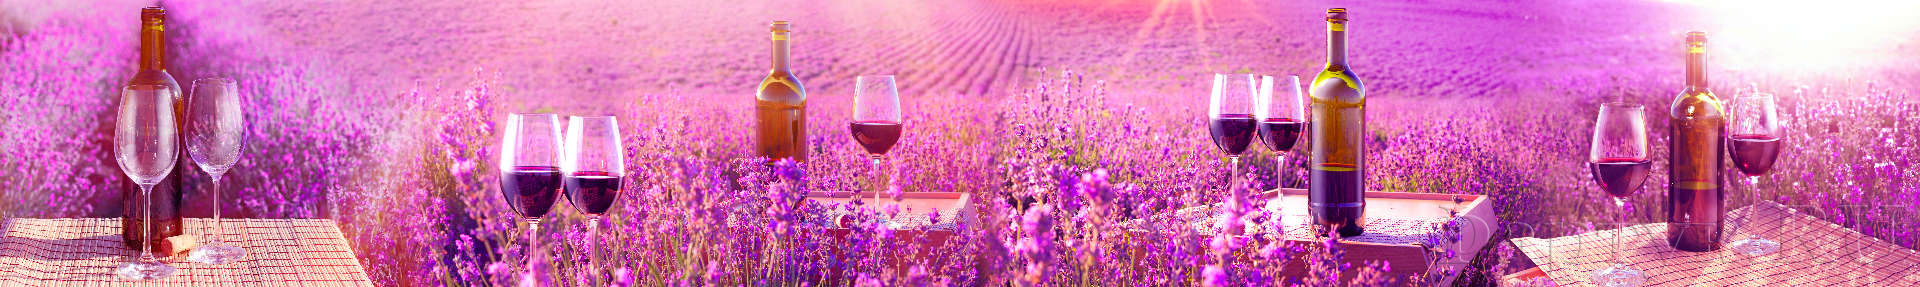 Бокалы вина в лавандовых полях